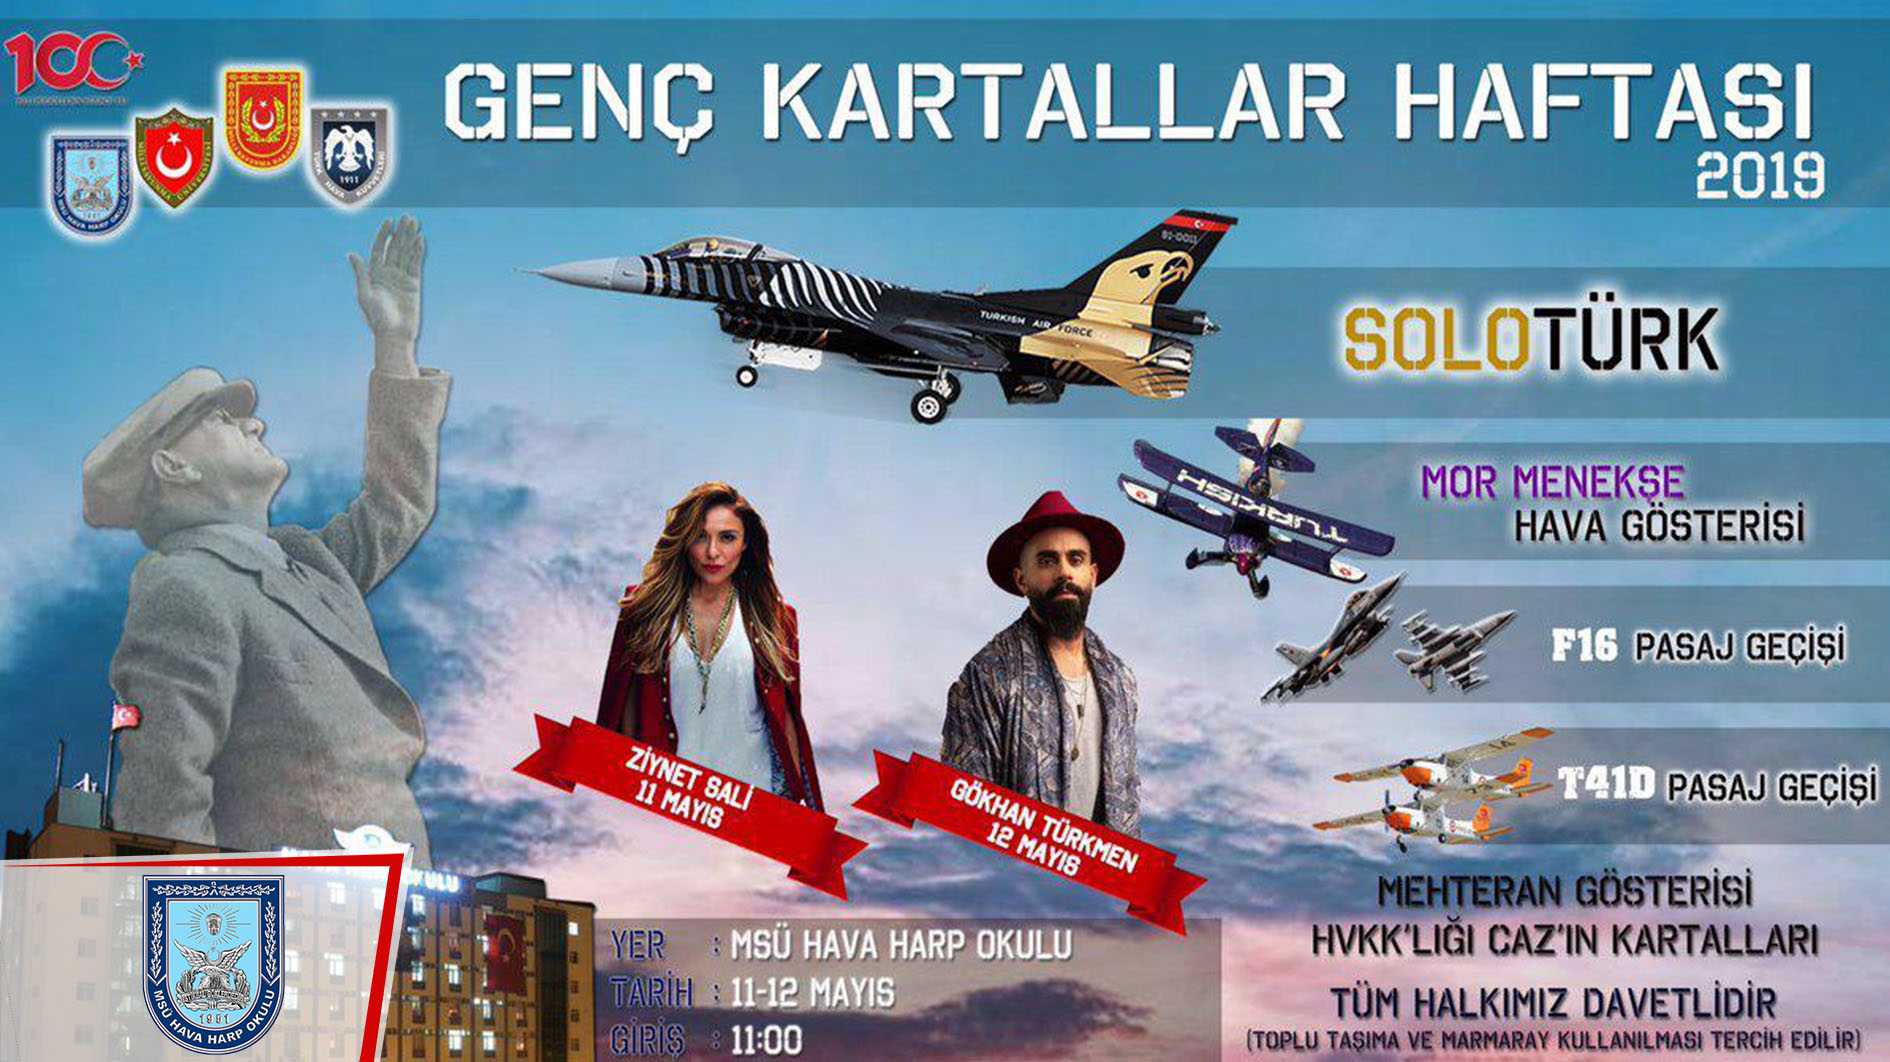 Genç Kartallar Haftası 2019, 11-12 Mayıs'ta, İstanbul'da